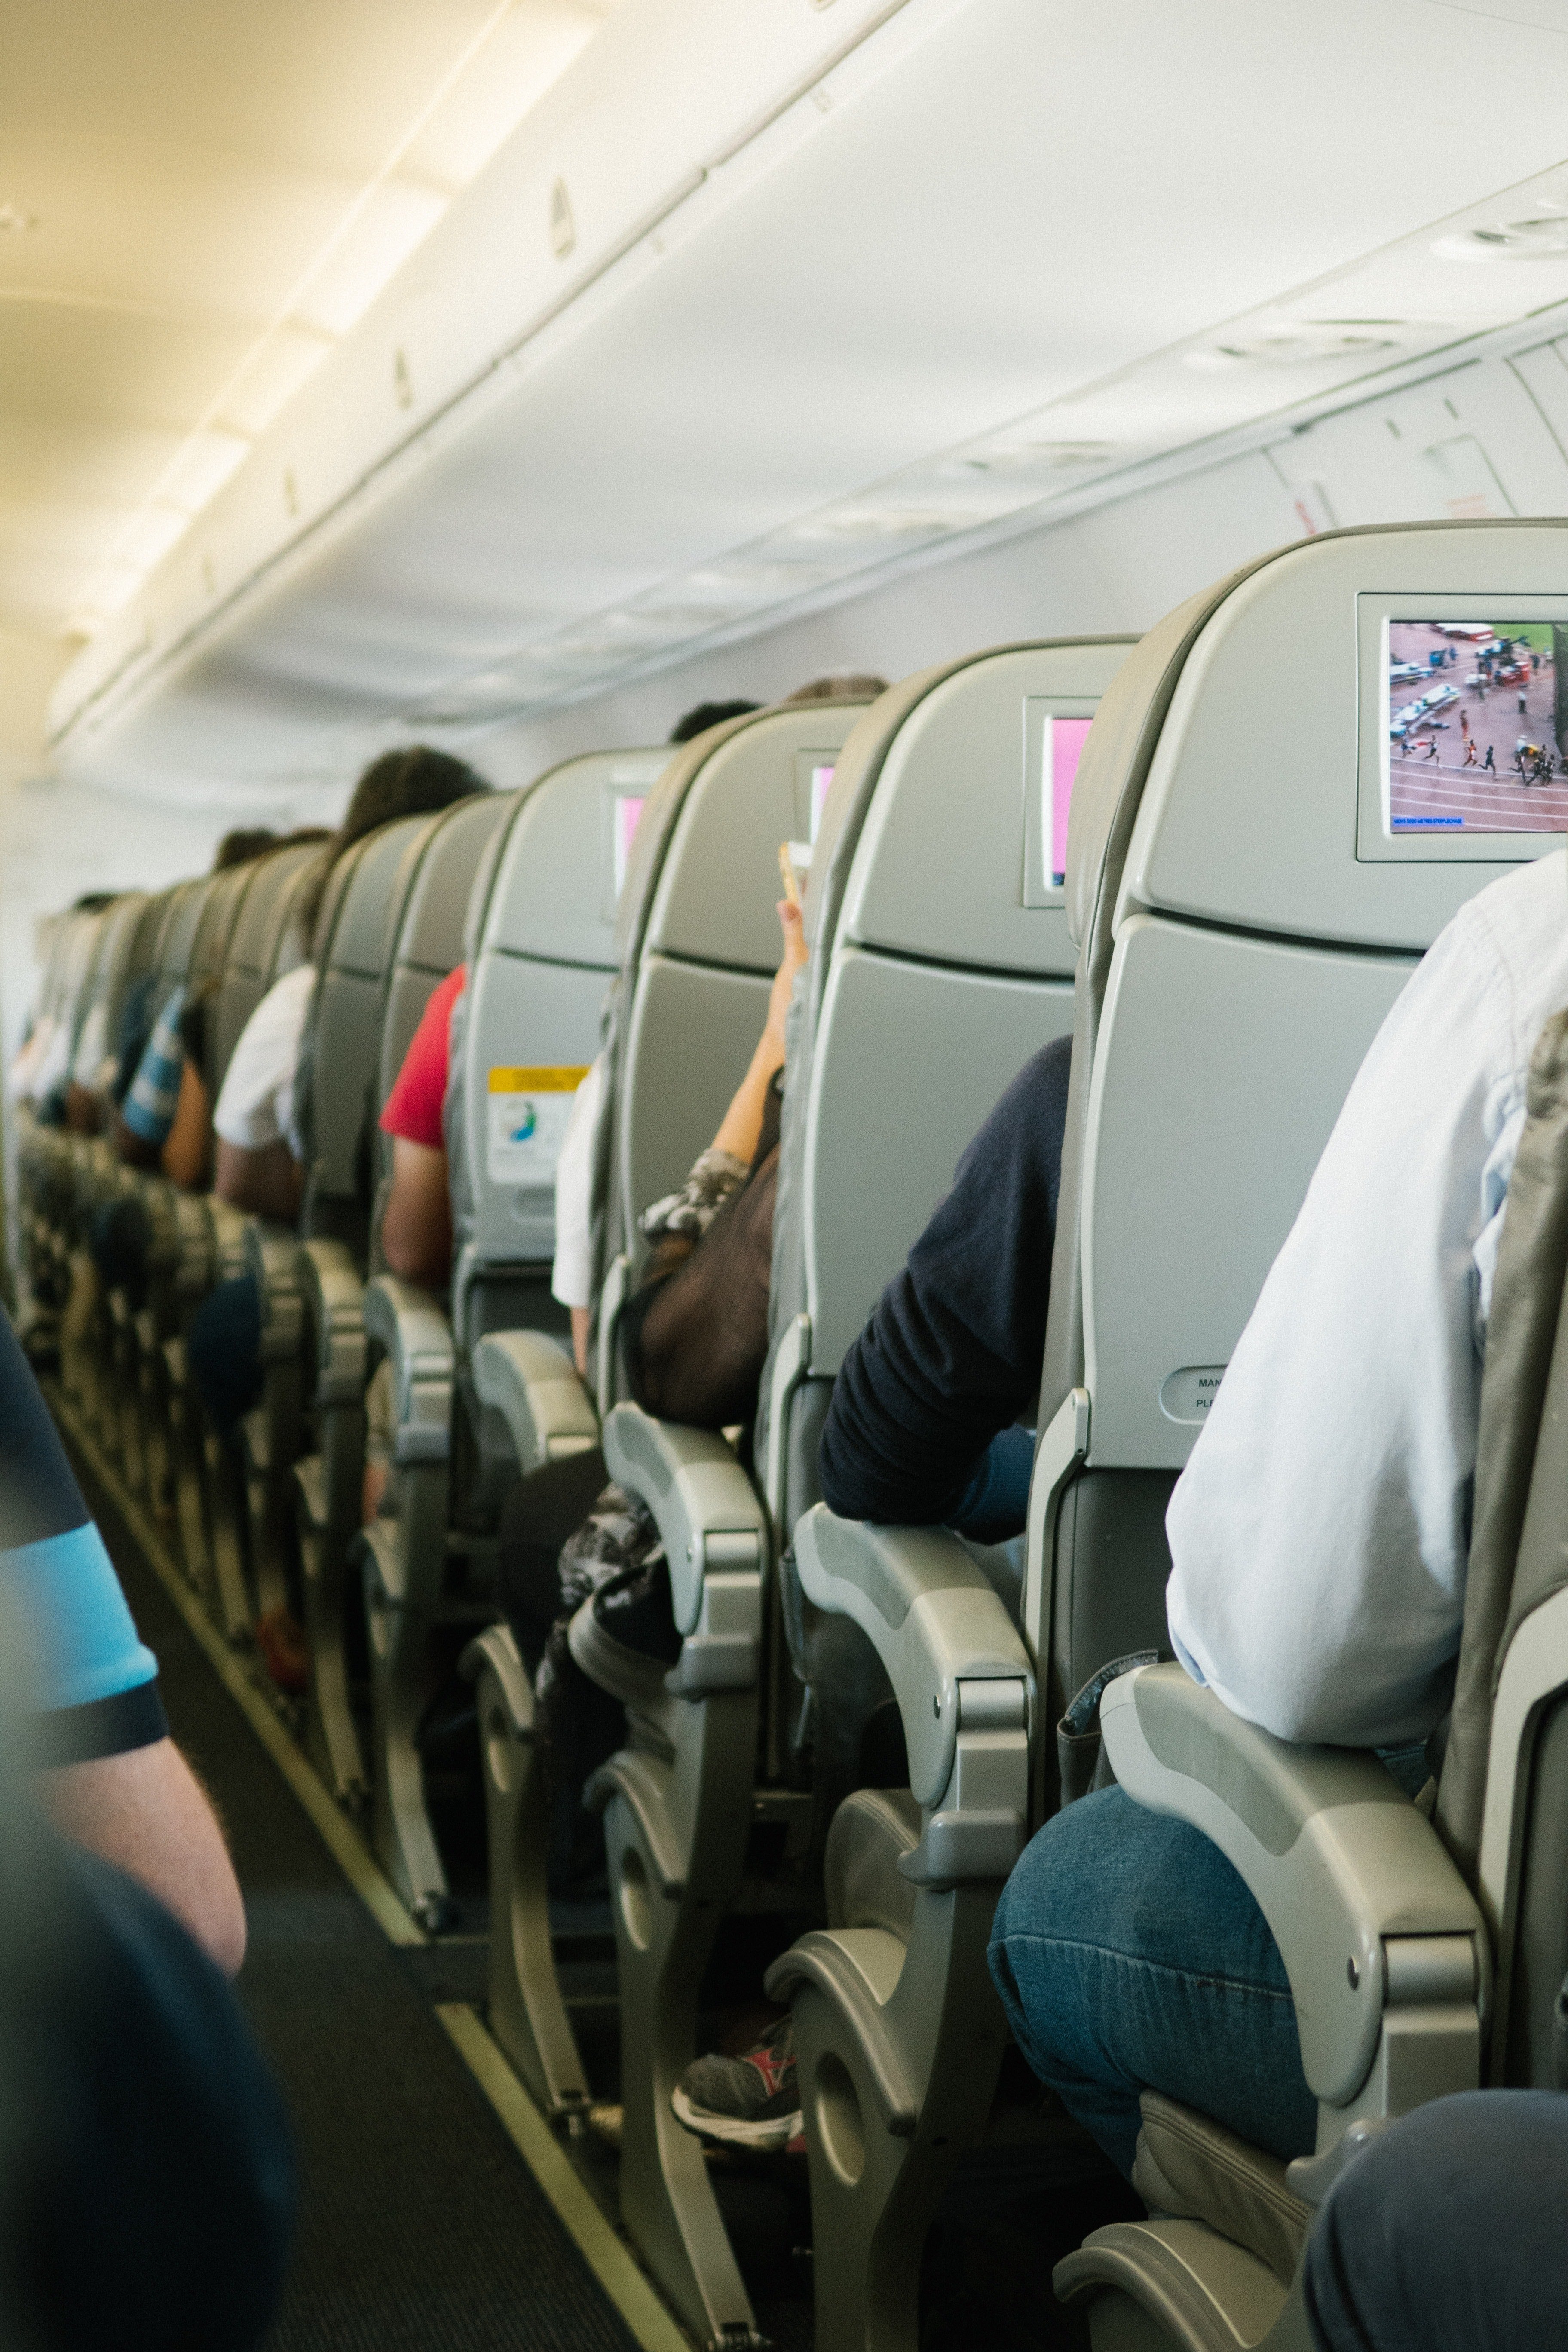 Hilera de asientos en un avión. | Foto: Pexels